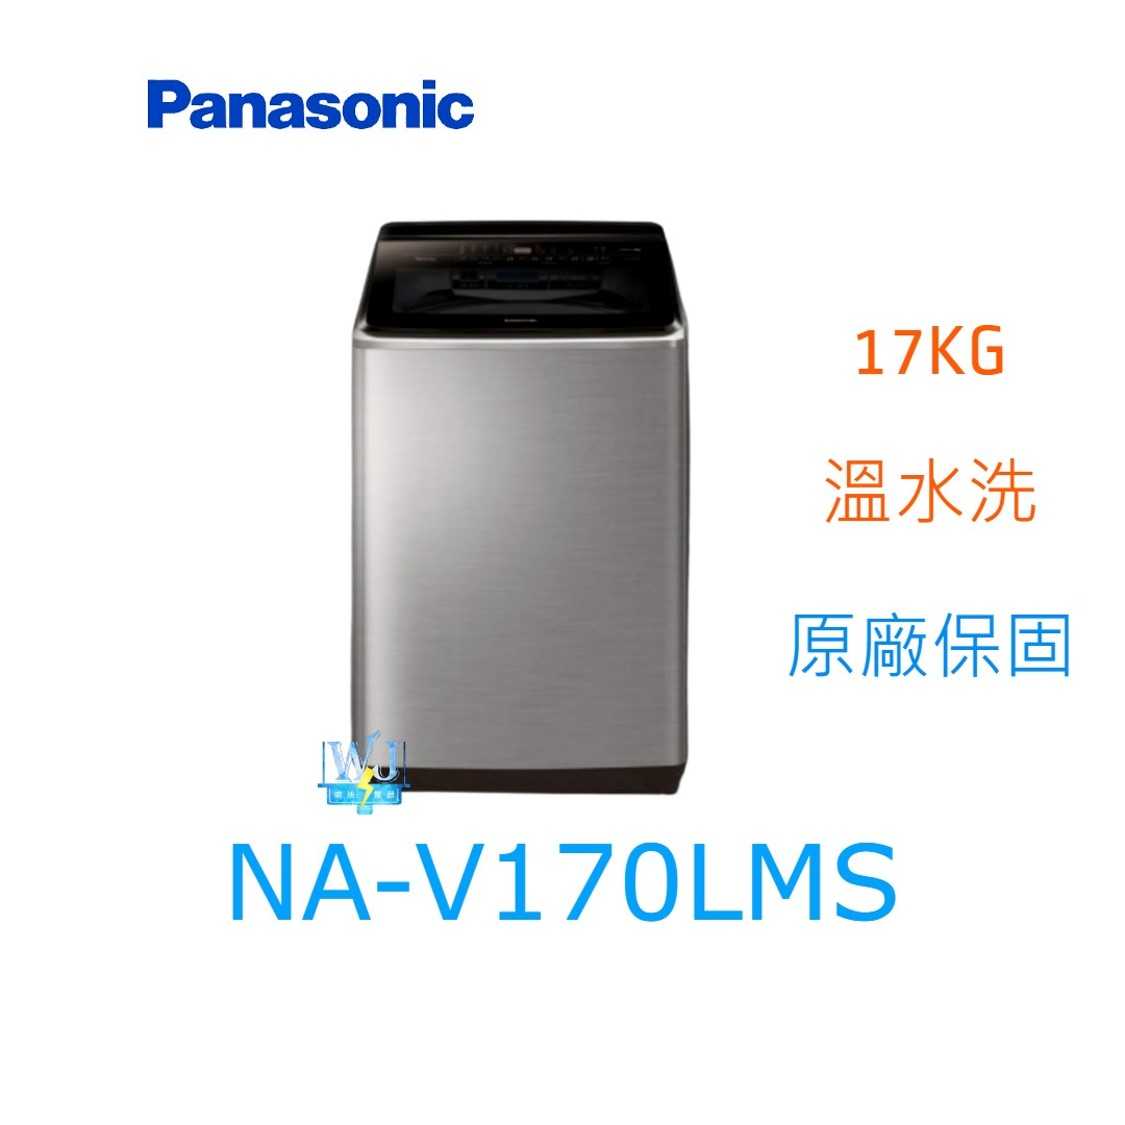 ☆可議價【暐竣電器】Panasonic 國際牌 NA-V170LMS 直立式洗衣機 NAV170LMS 溫水洗 洗衣機